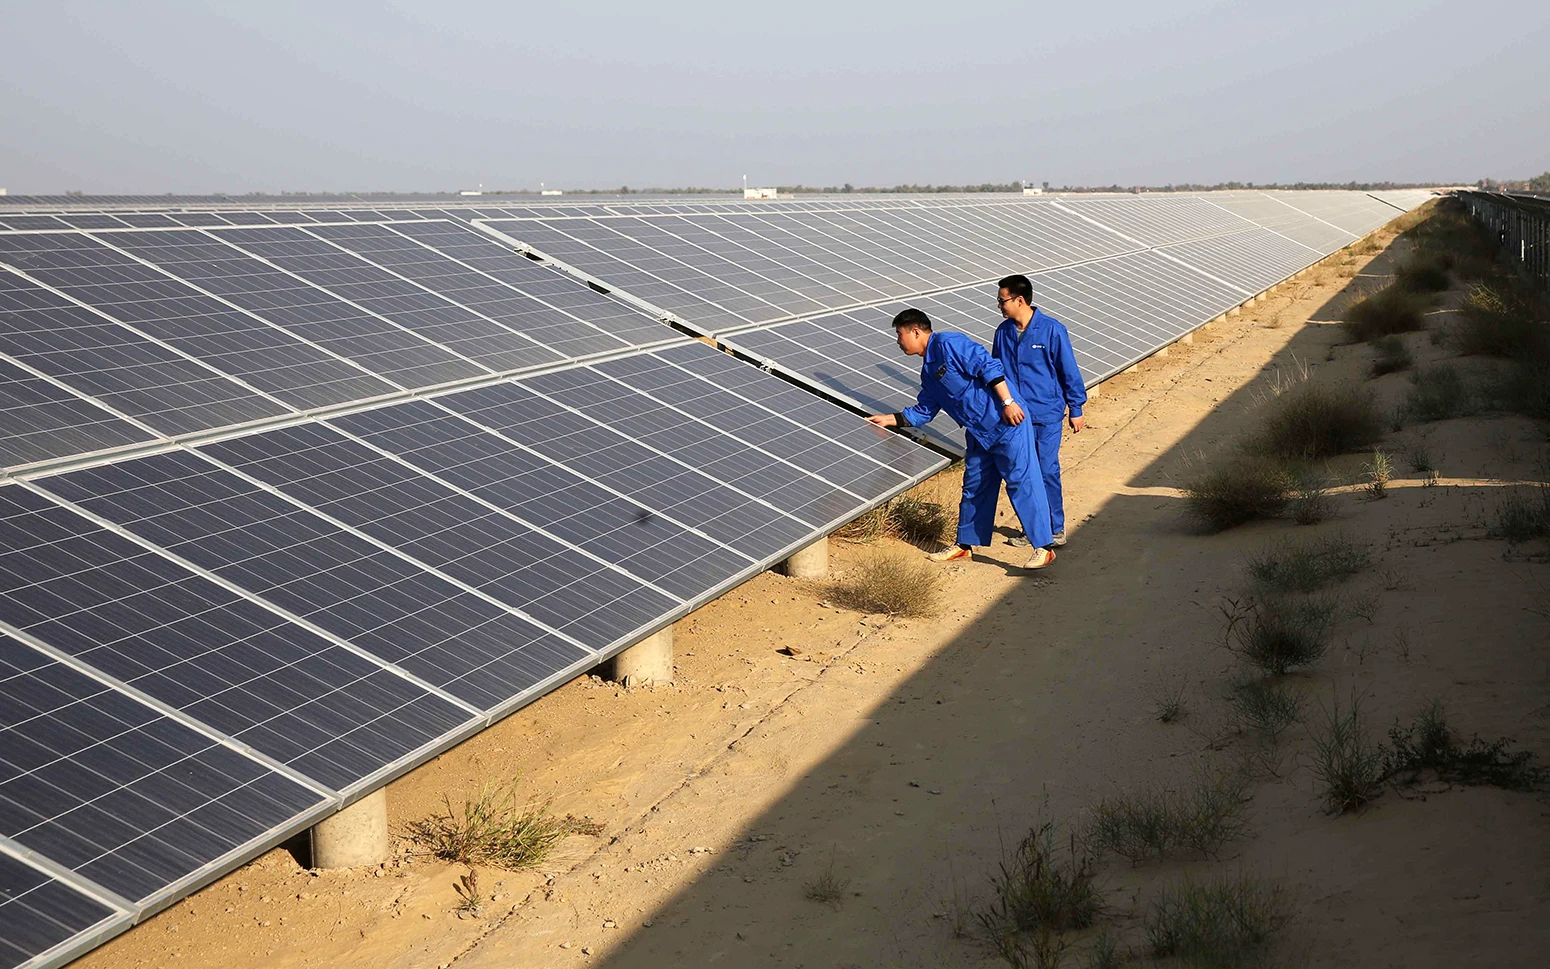 技术人员在巴基斯坦巴哈瓦尔布尔检查太阳能电池板。